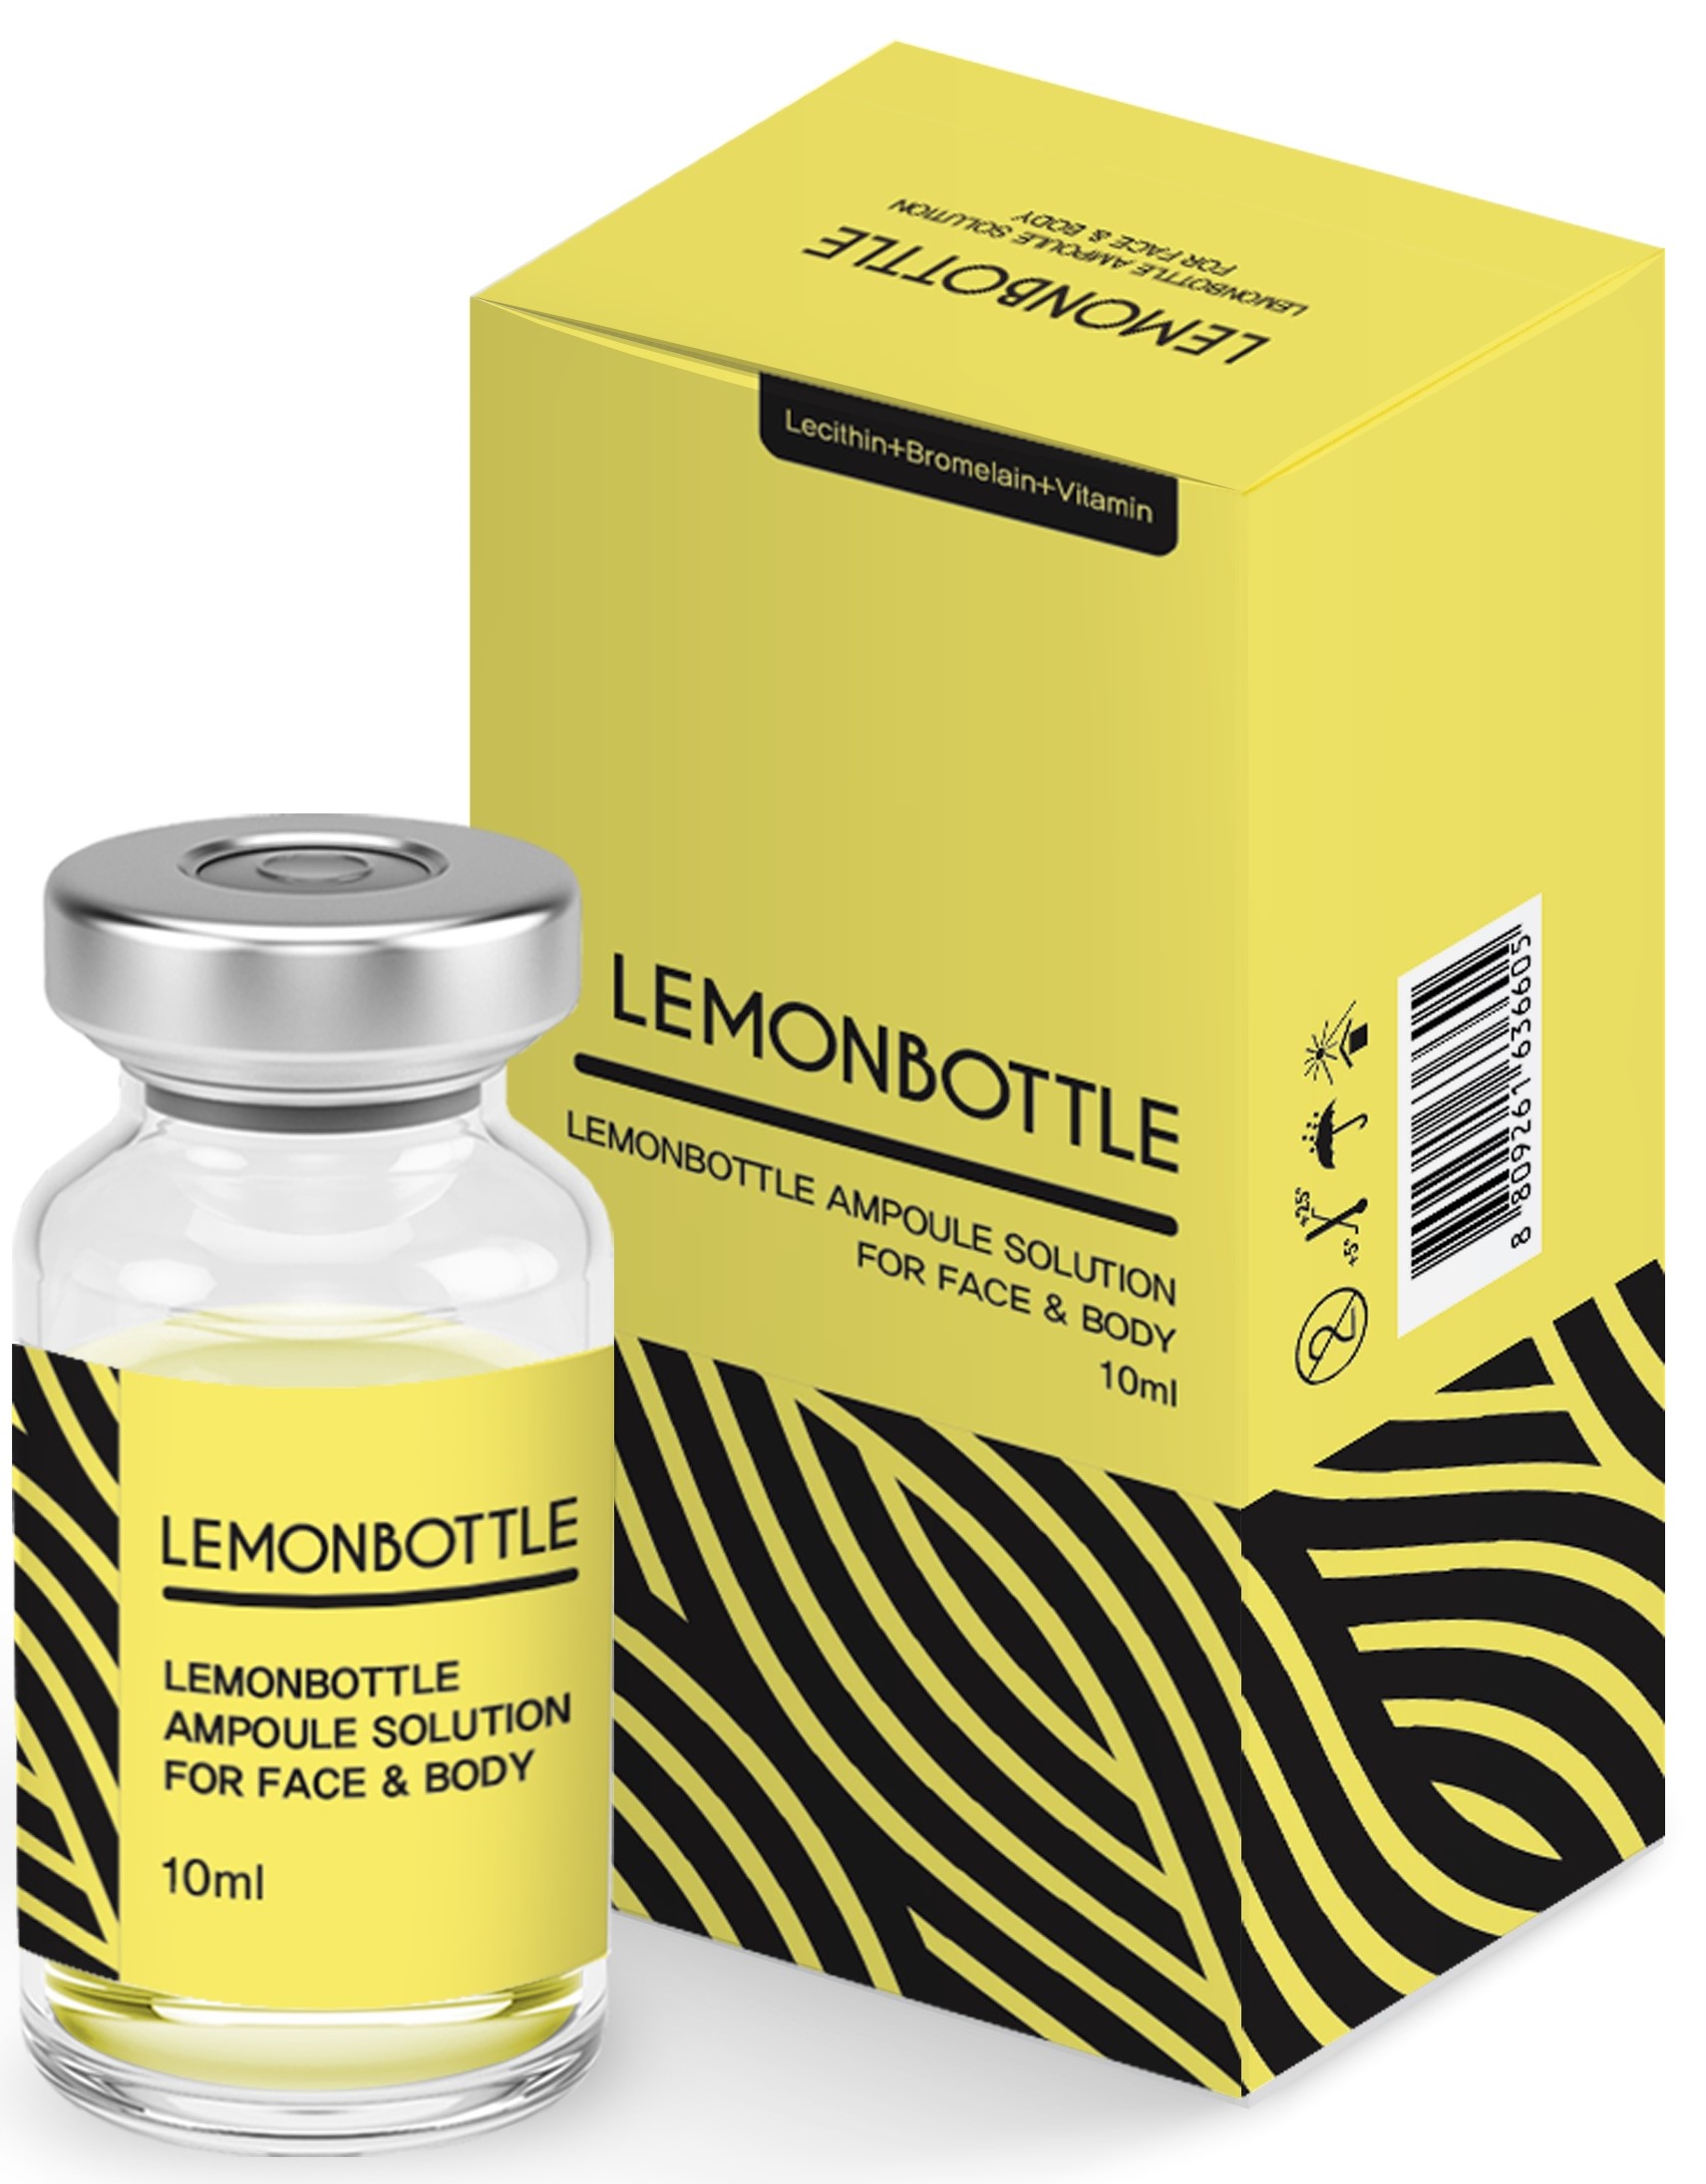 Billede af det ulovlige produkt: Lemonbottle Lipolysis